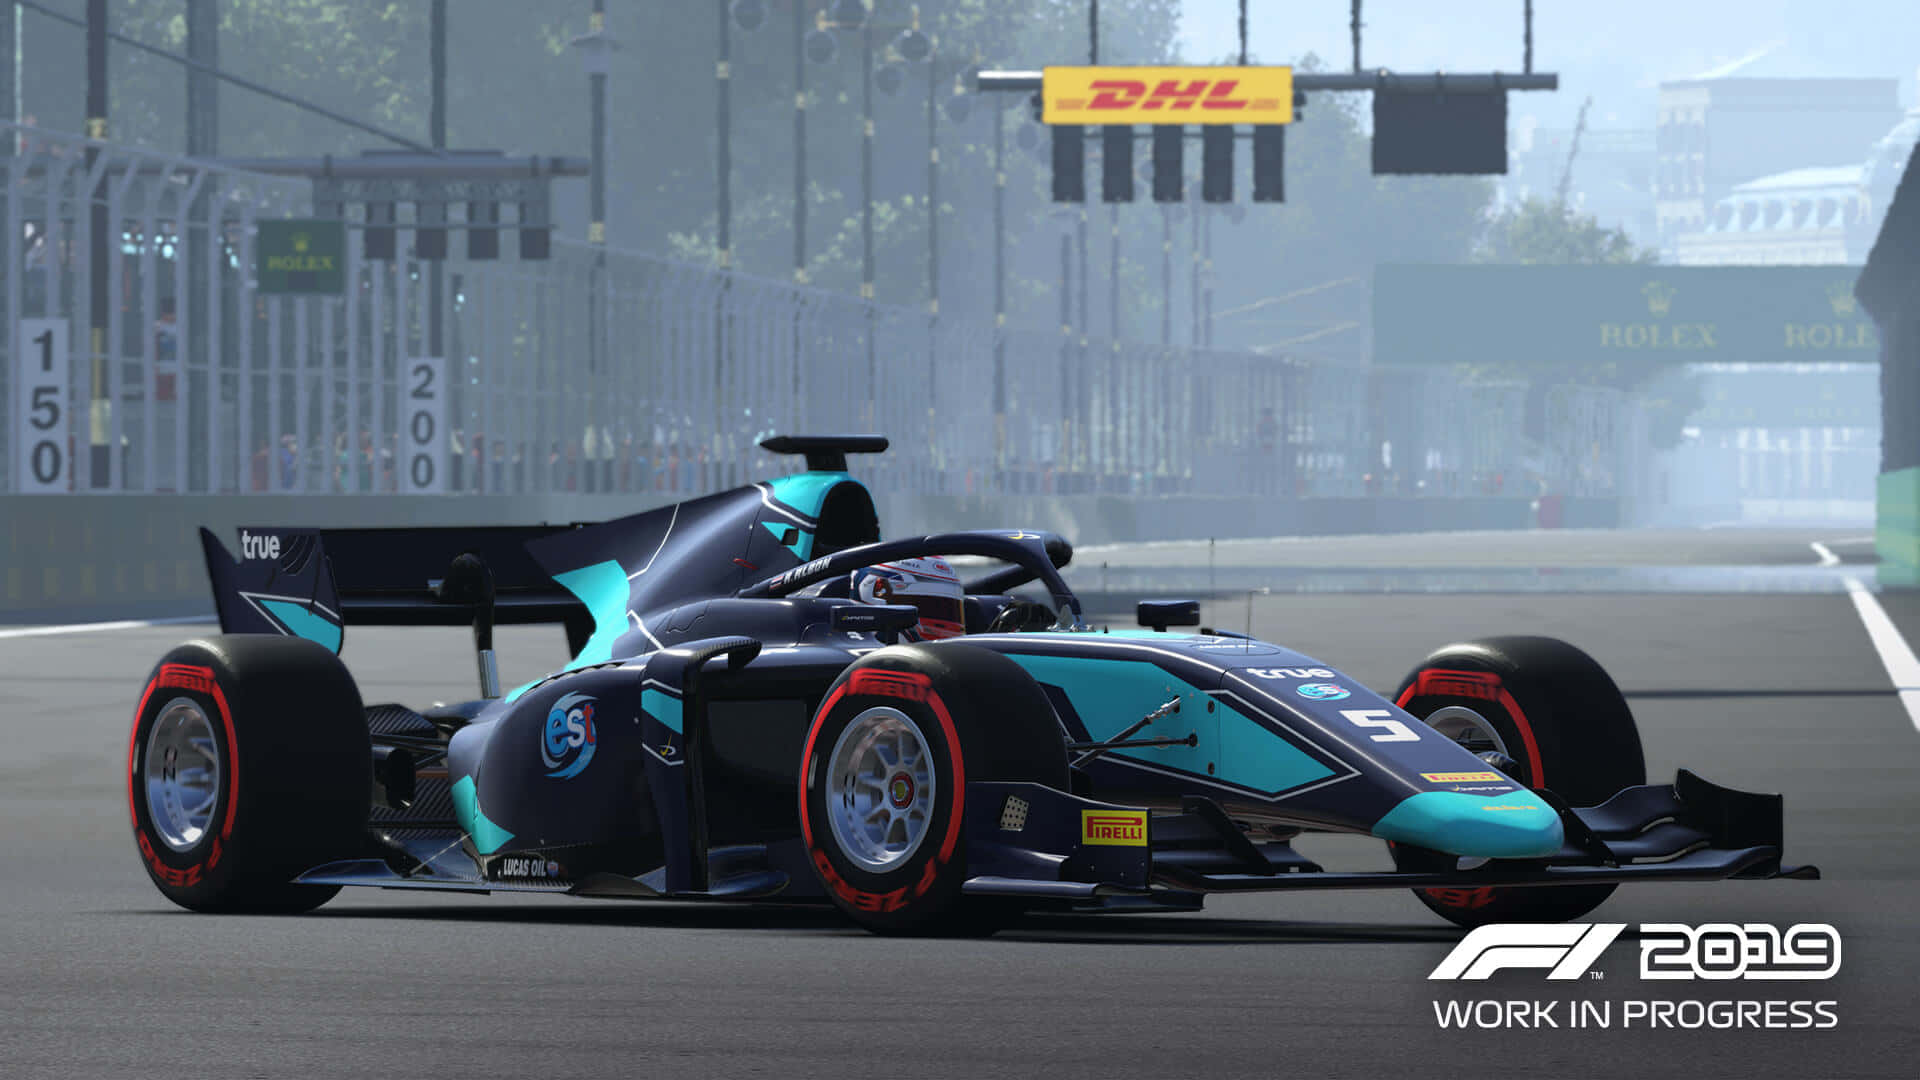 Fondode Pantalla Mercedes Amg Hd F1 2019 En El Circuito De Carreras.